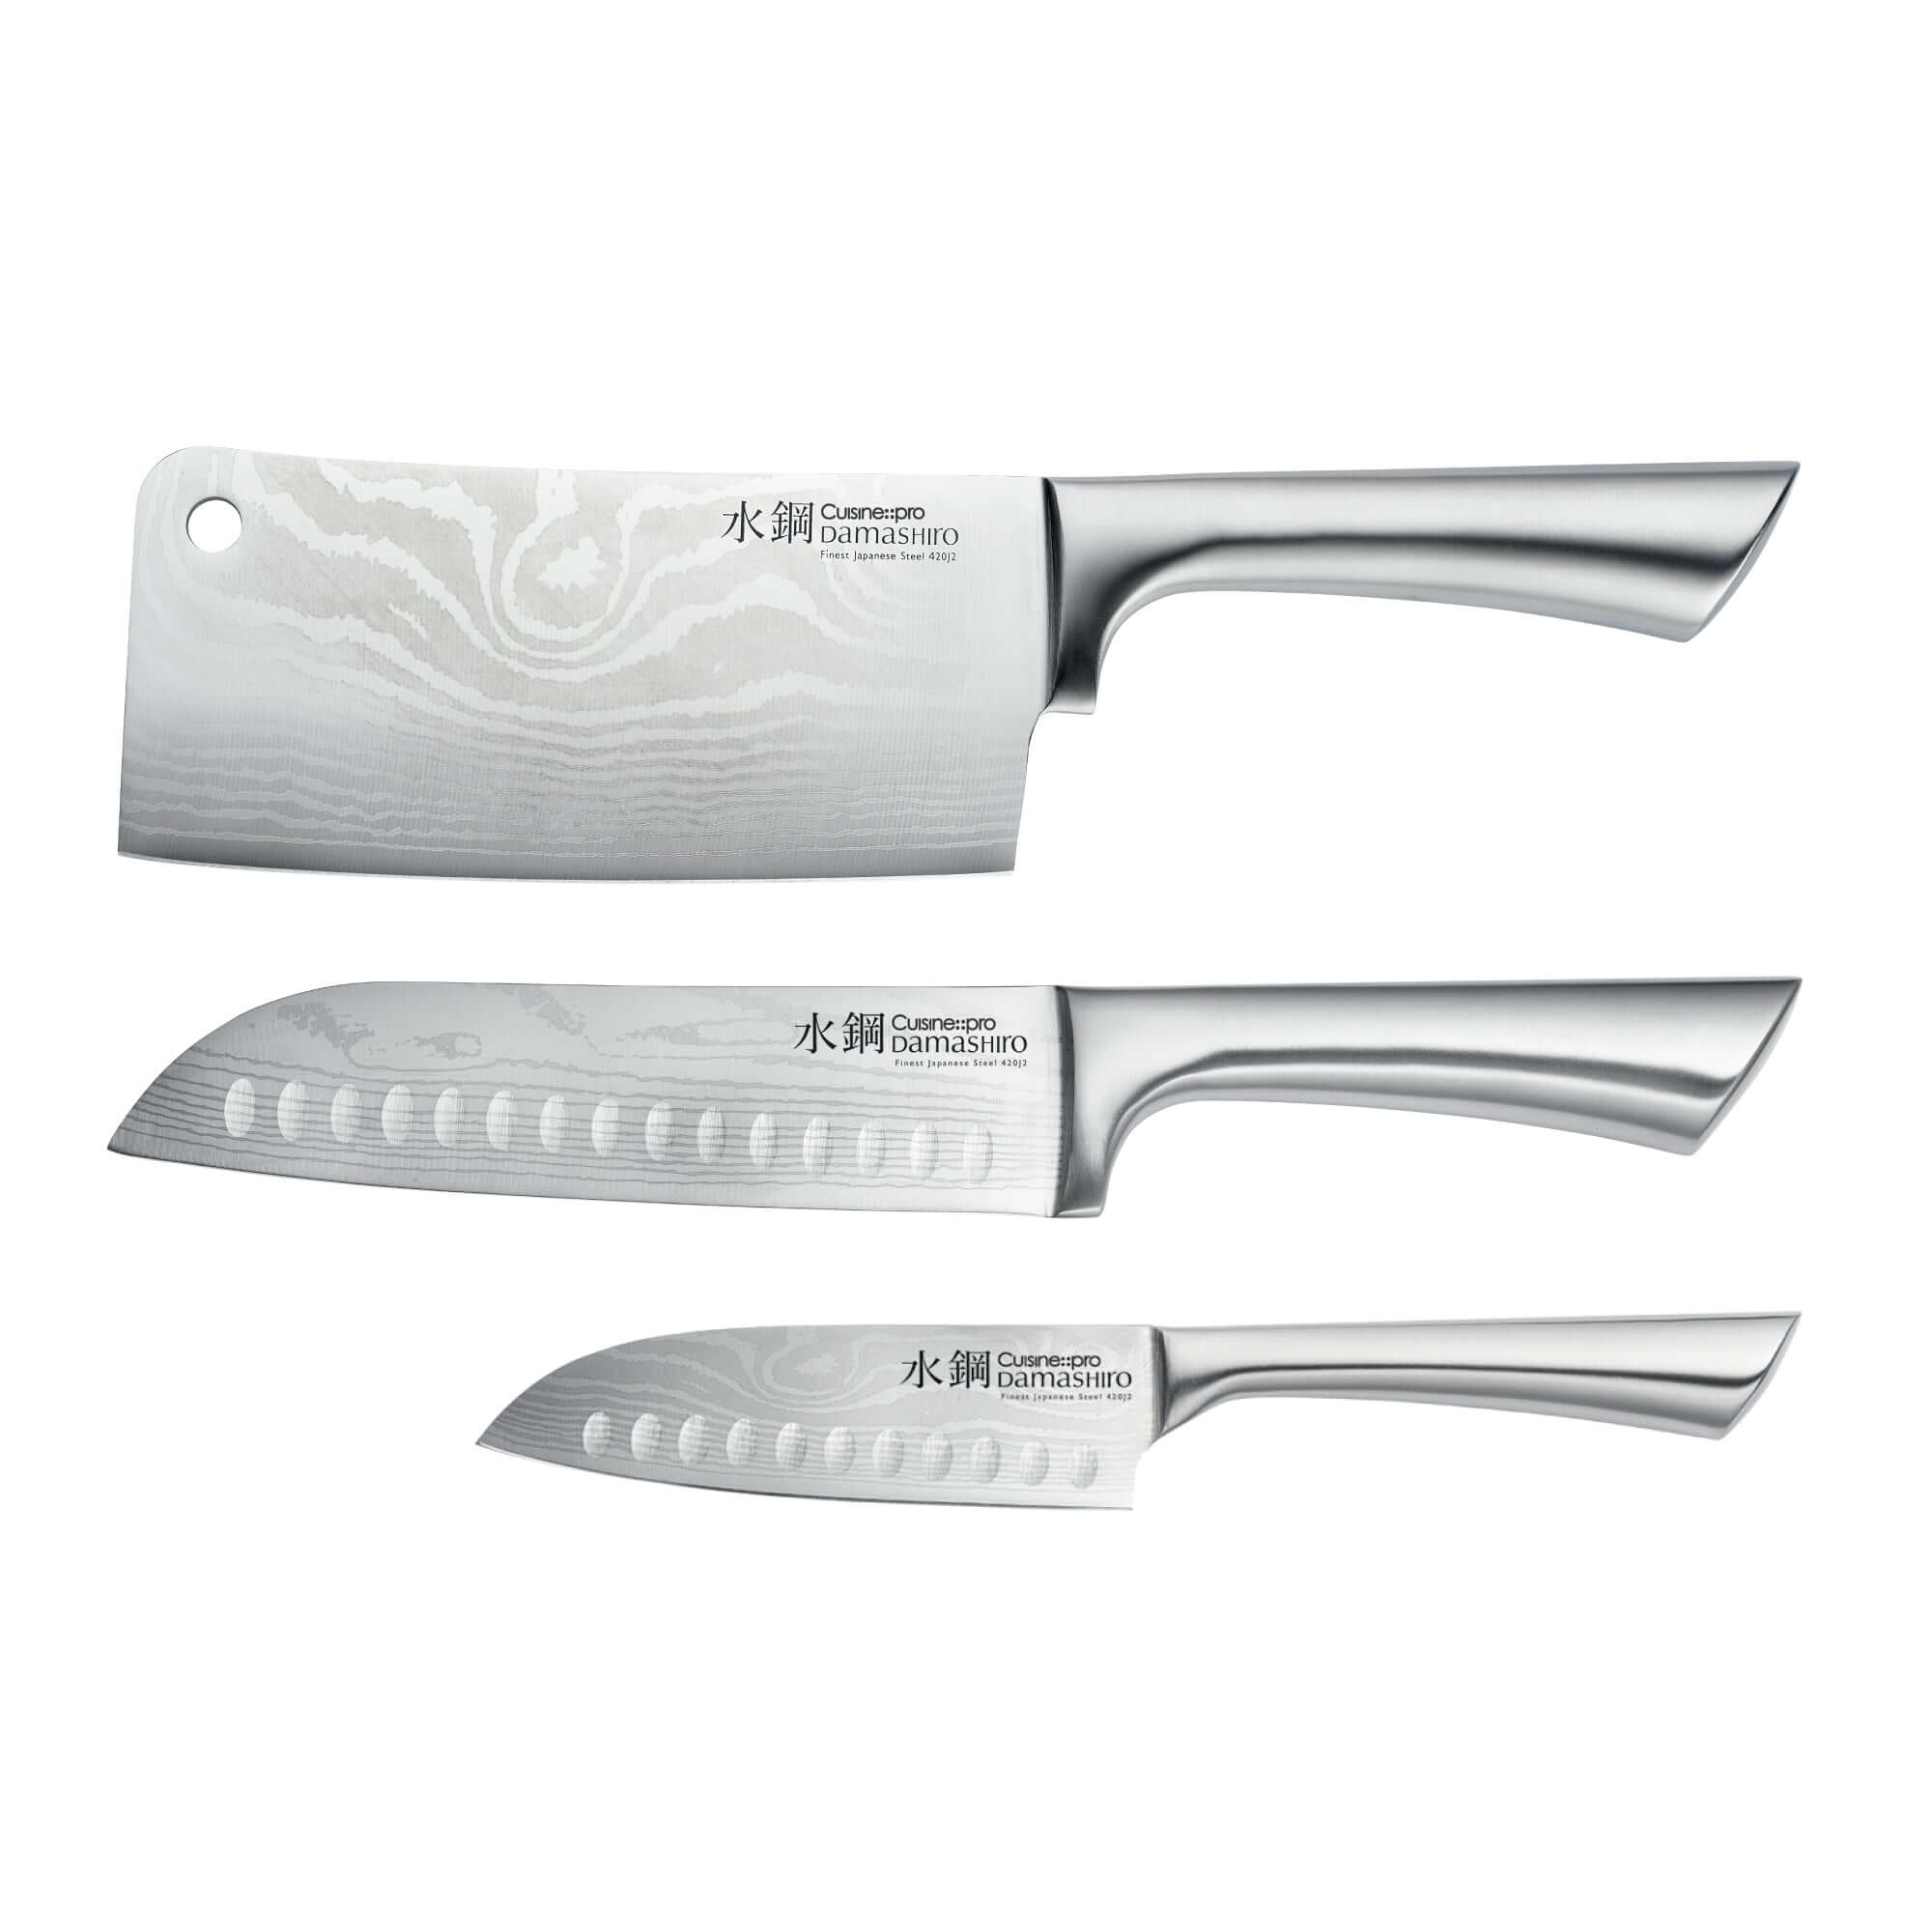 Cuisine::pro® Damashiro® Ultimate Knife Set of 3-1041709